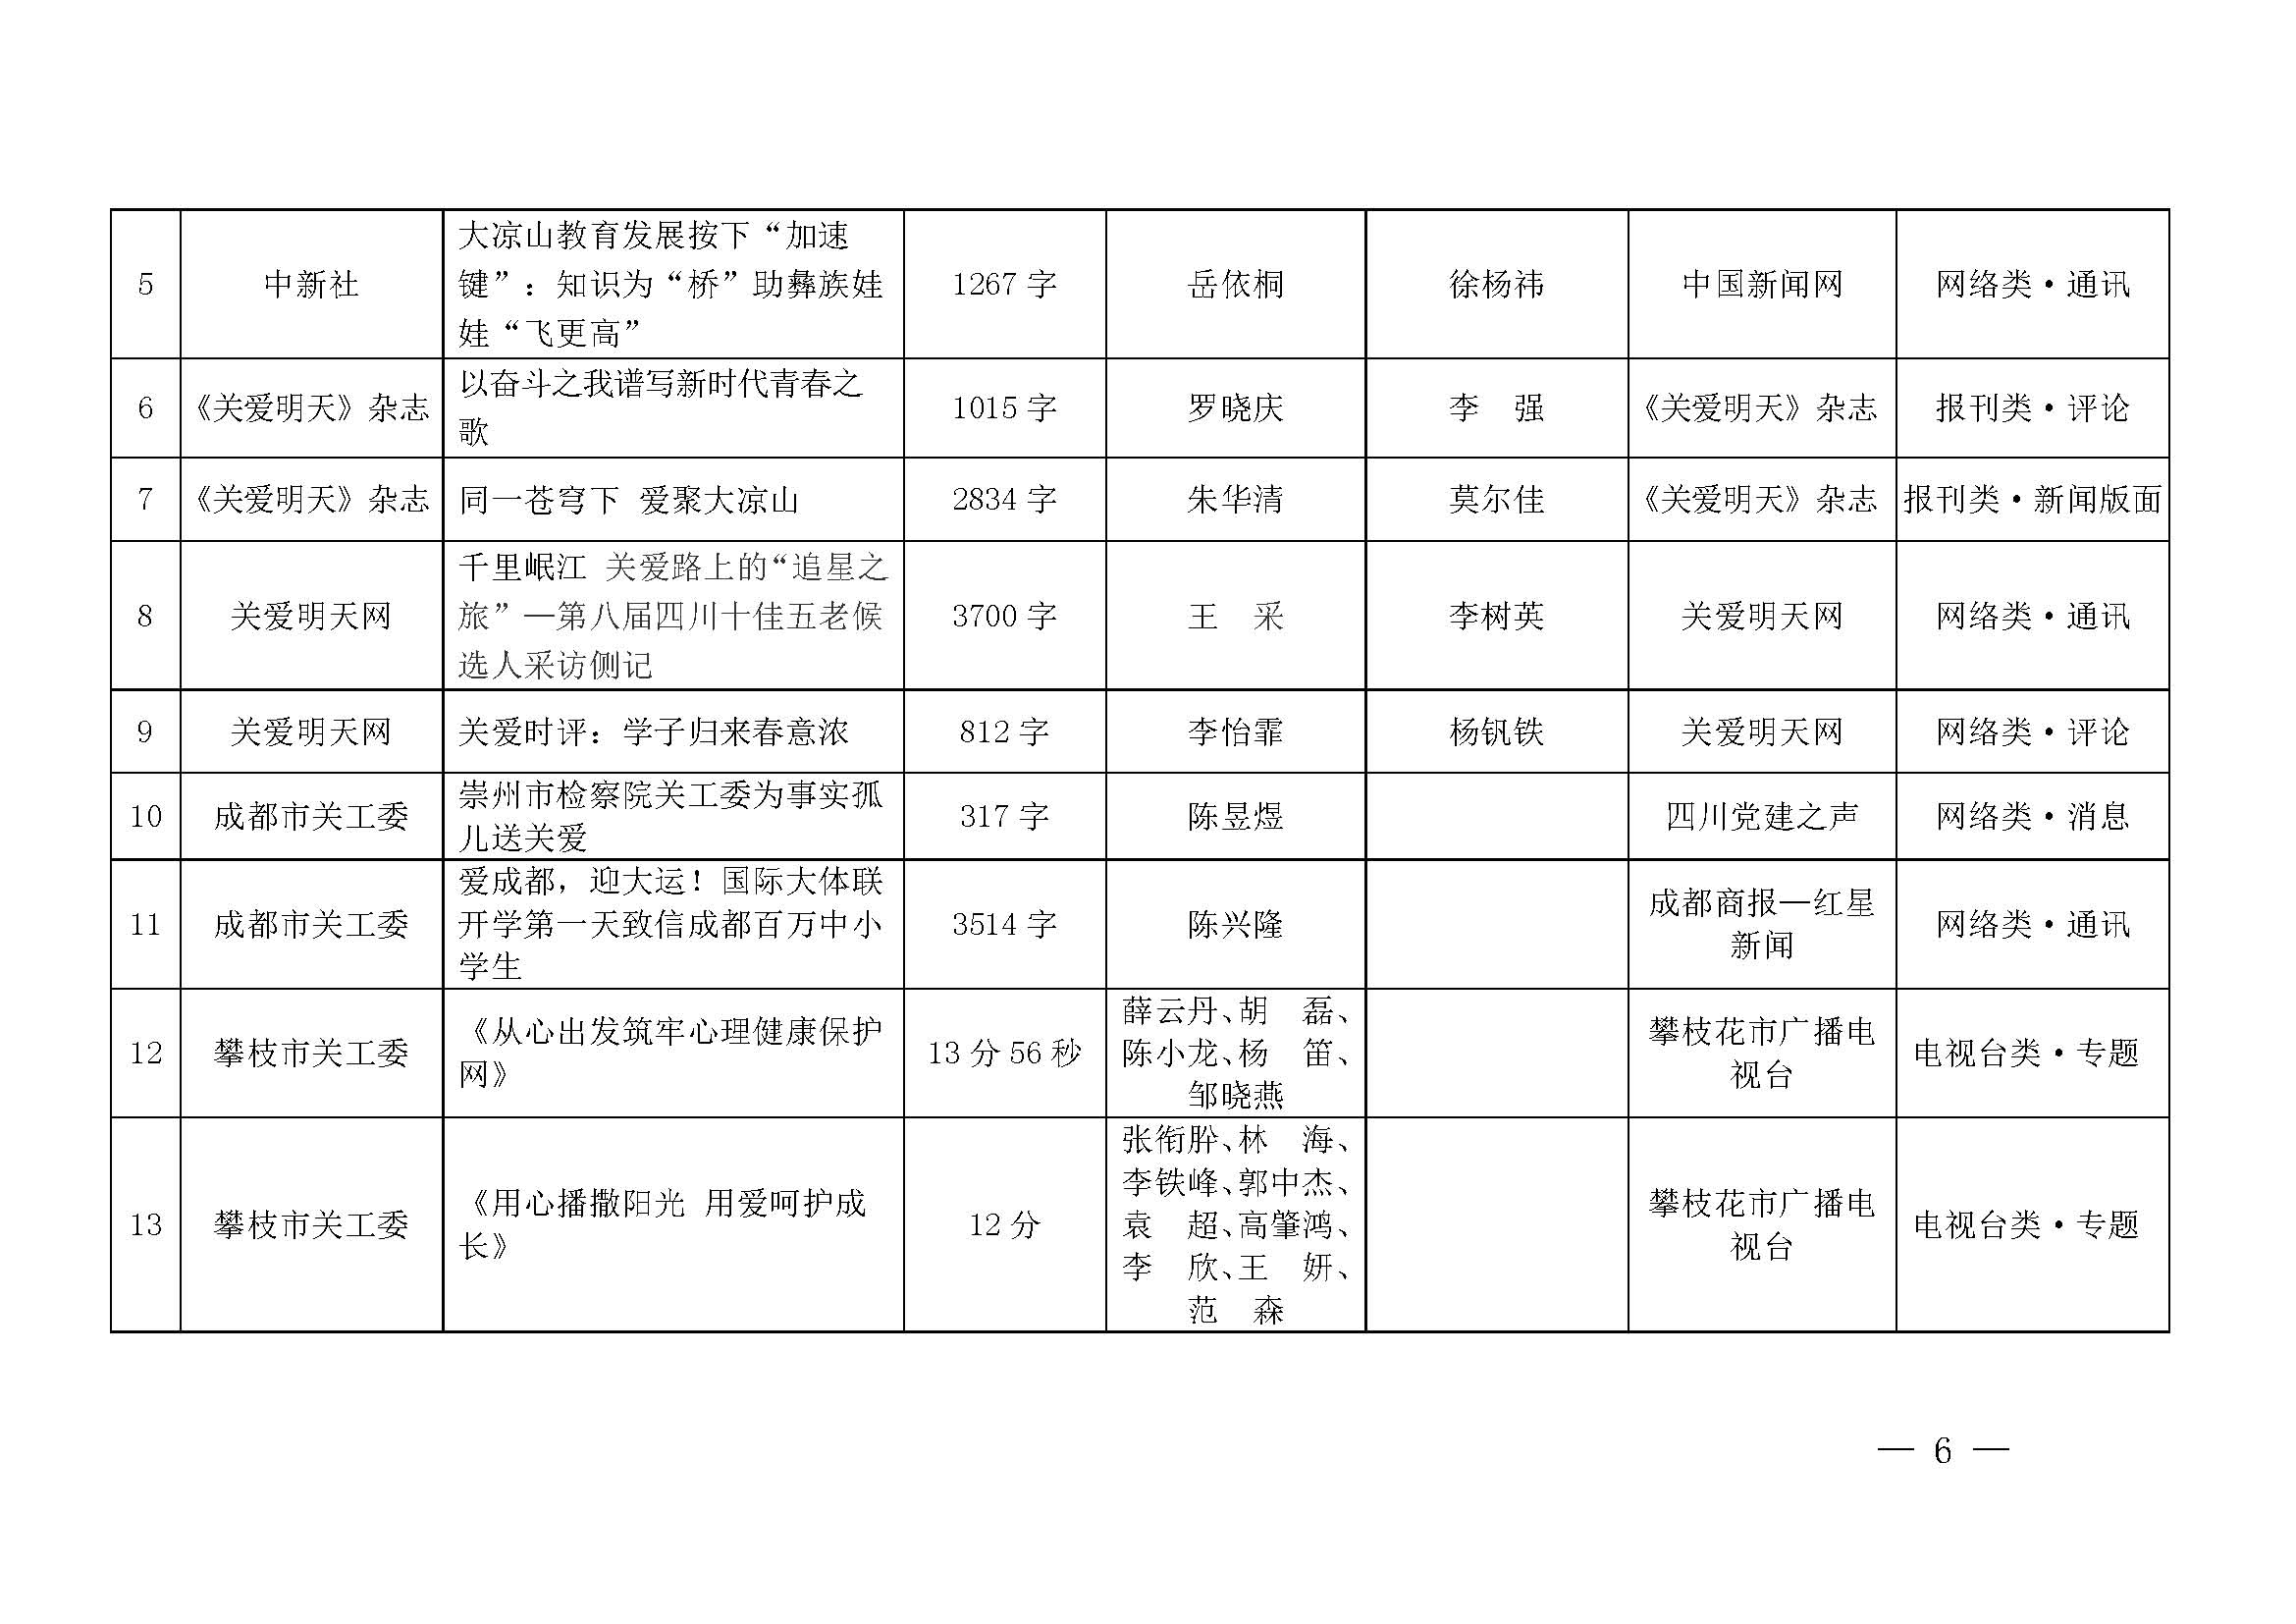 第七届四川宣传关心下一代新闻佳作获奖名单公示_页面_06.jpg